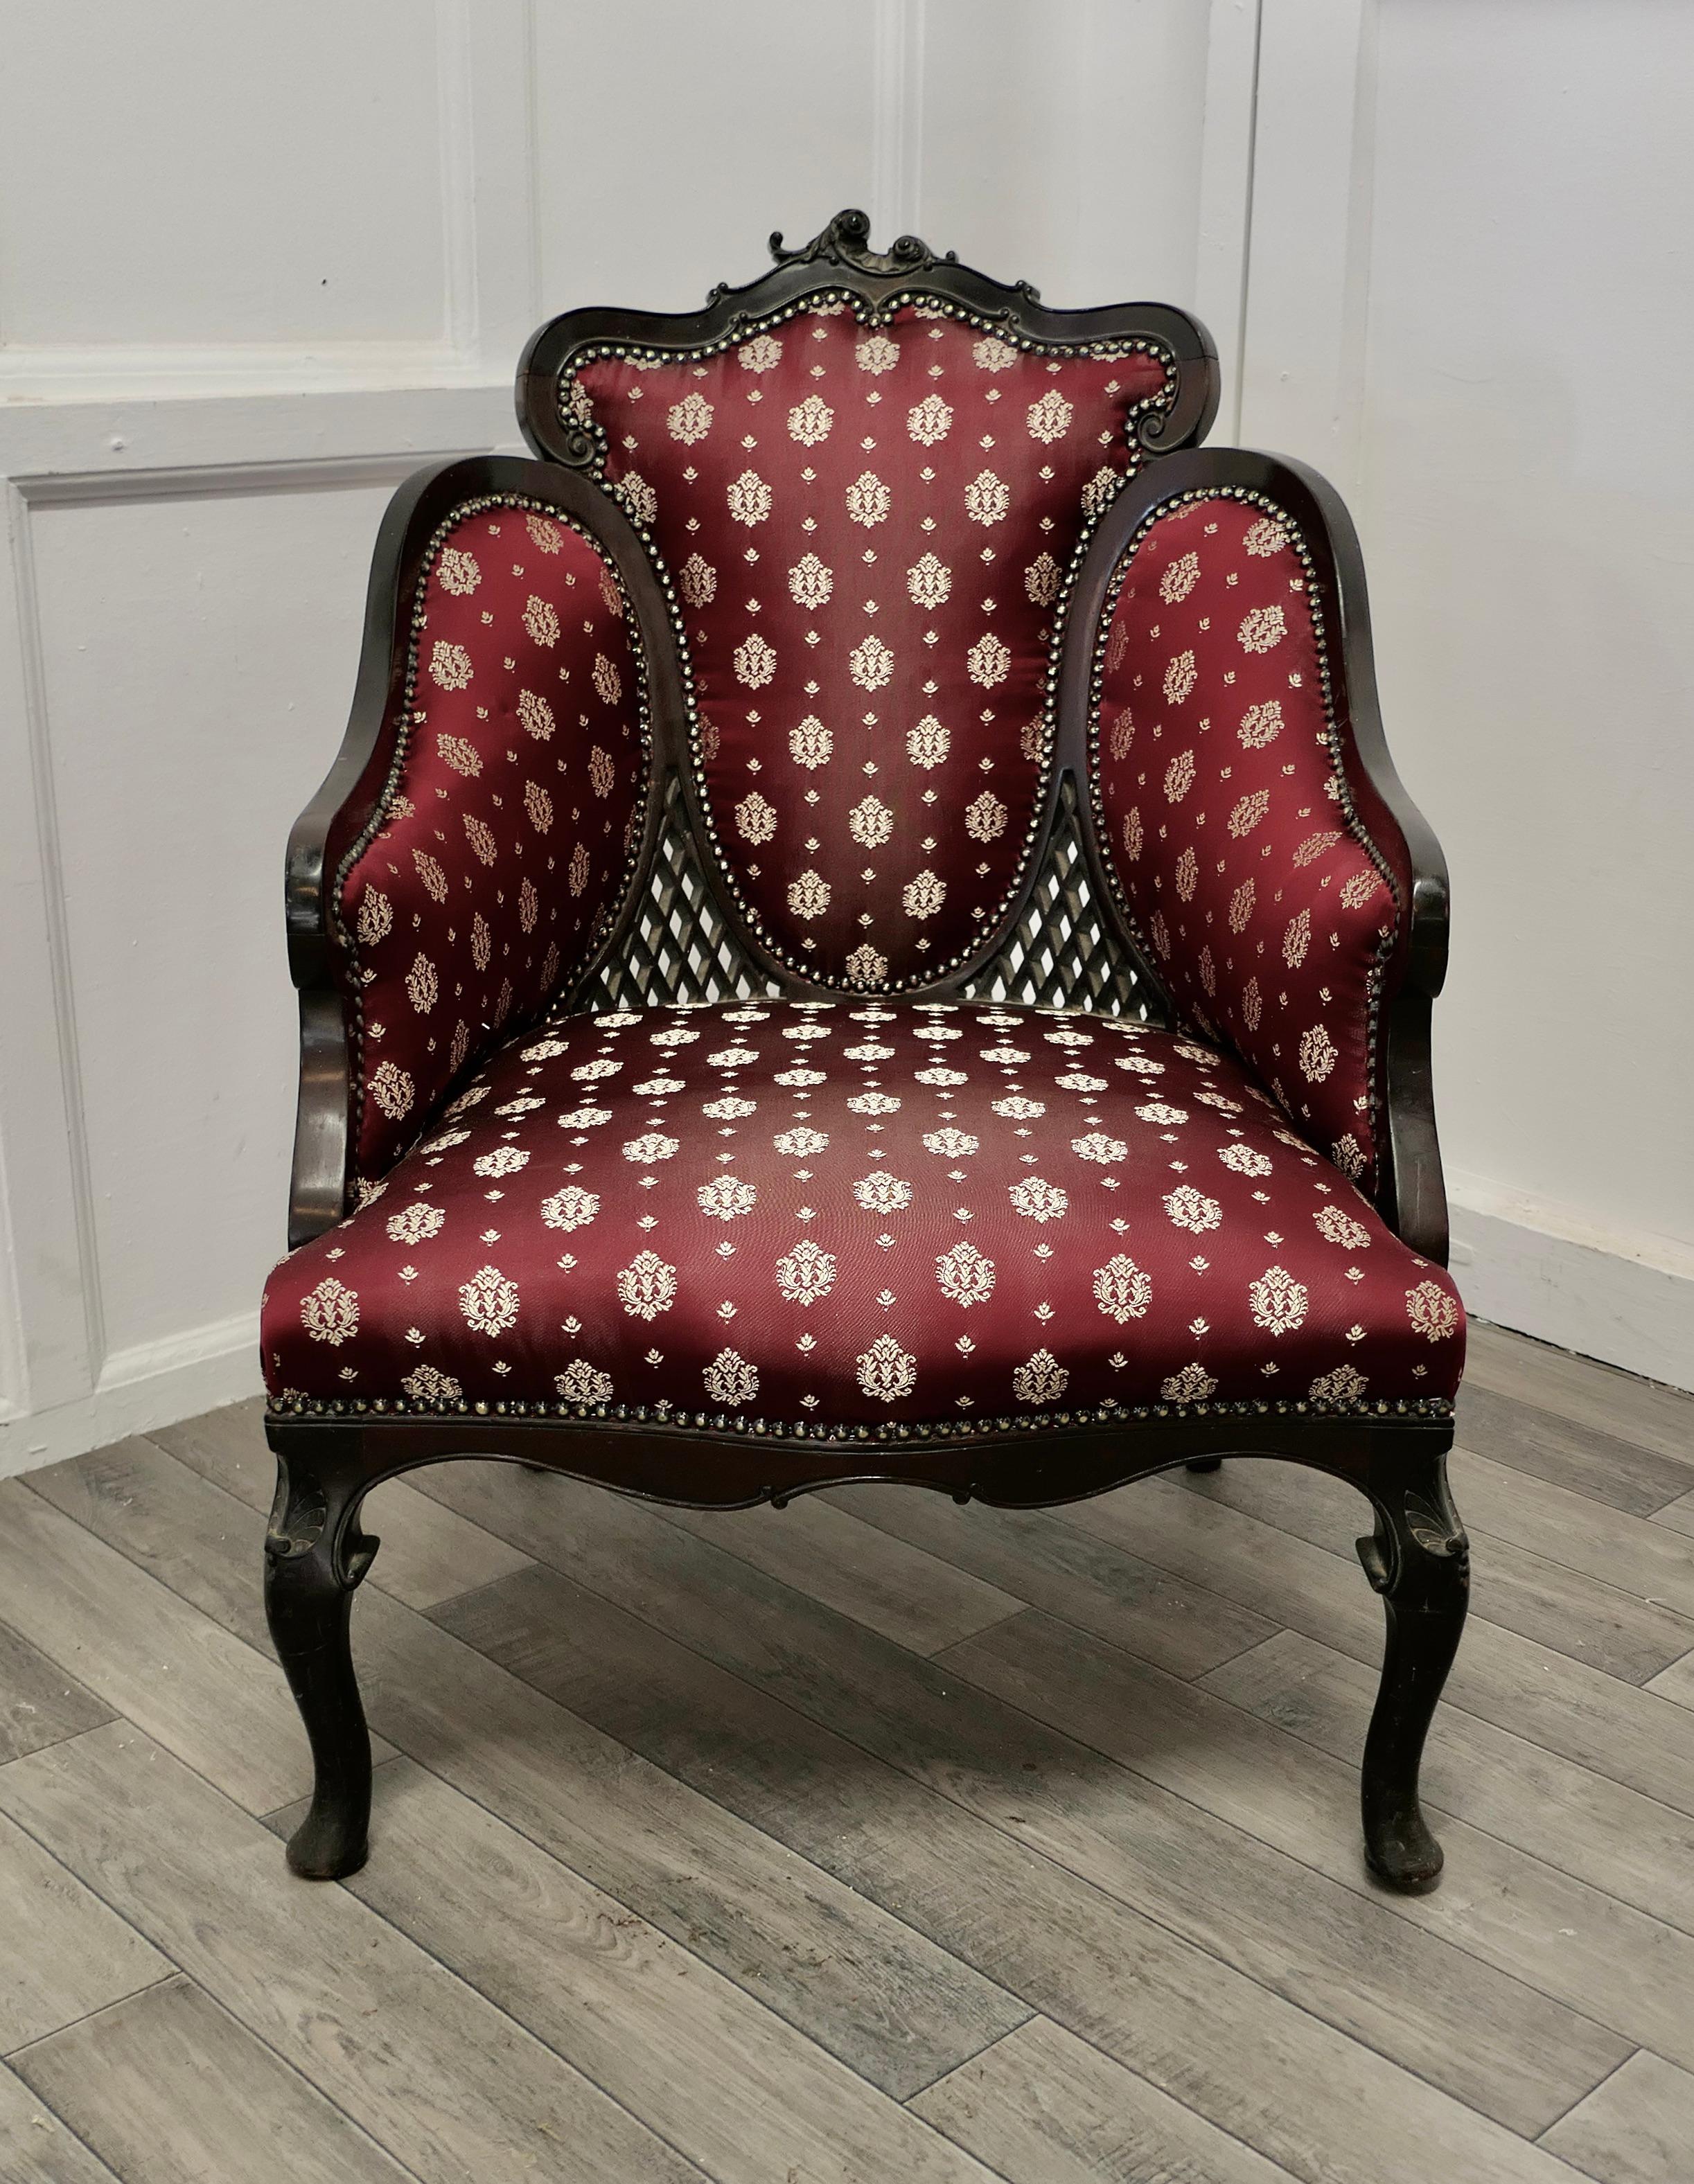 Hochwertiger viktorianischer Salonsessel, gepolstert mit Regency-Seidenstoff.

Dieser schöne geschnitzte Stuhl wurde schwarz ebonisiert, wie es nach dem Tod von Prinz Albert in Mode war, er ist sehr stilvoll 
Der Stuhl hat geformte Stoffpaneele,